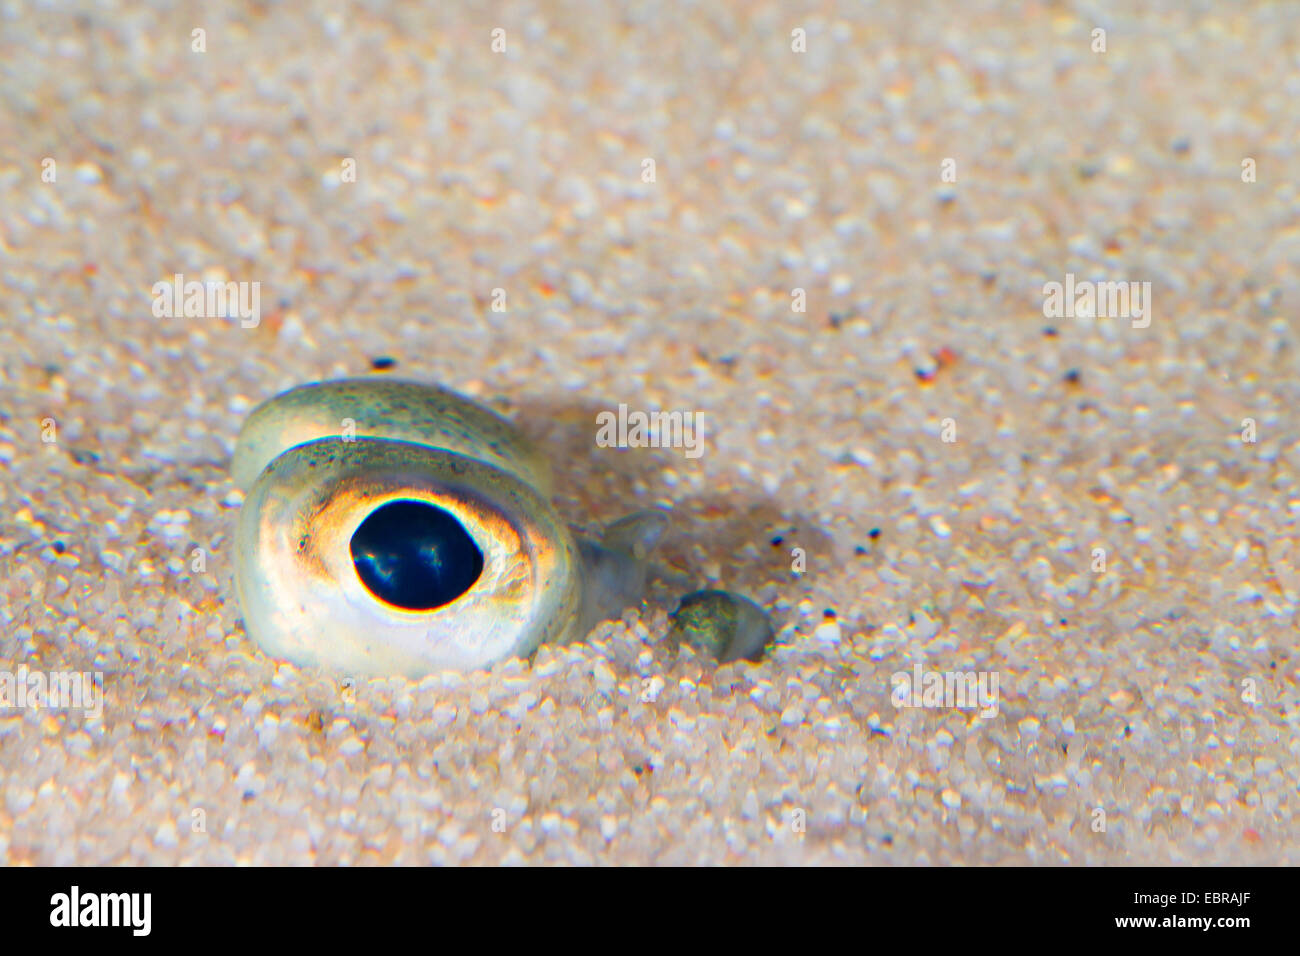 La solla, la solla (Pleuronectes platessa), excavados en la arena sólo los ojos puede verse Foto de stock